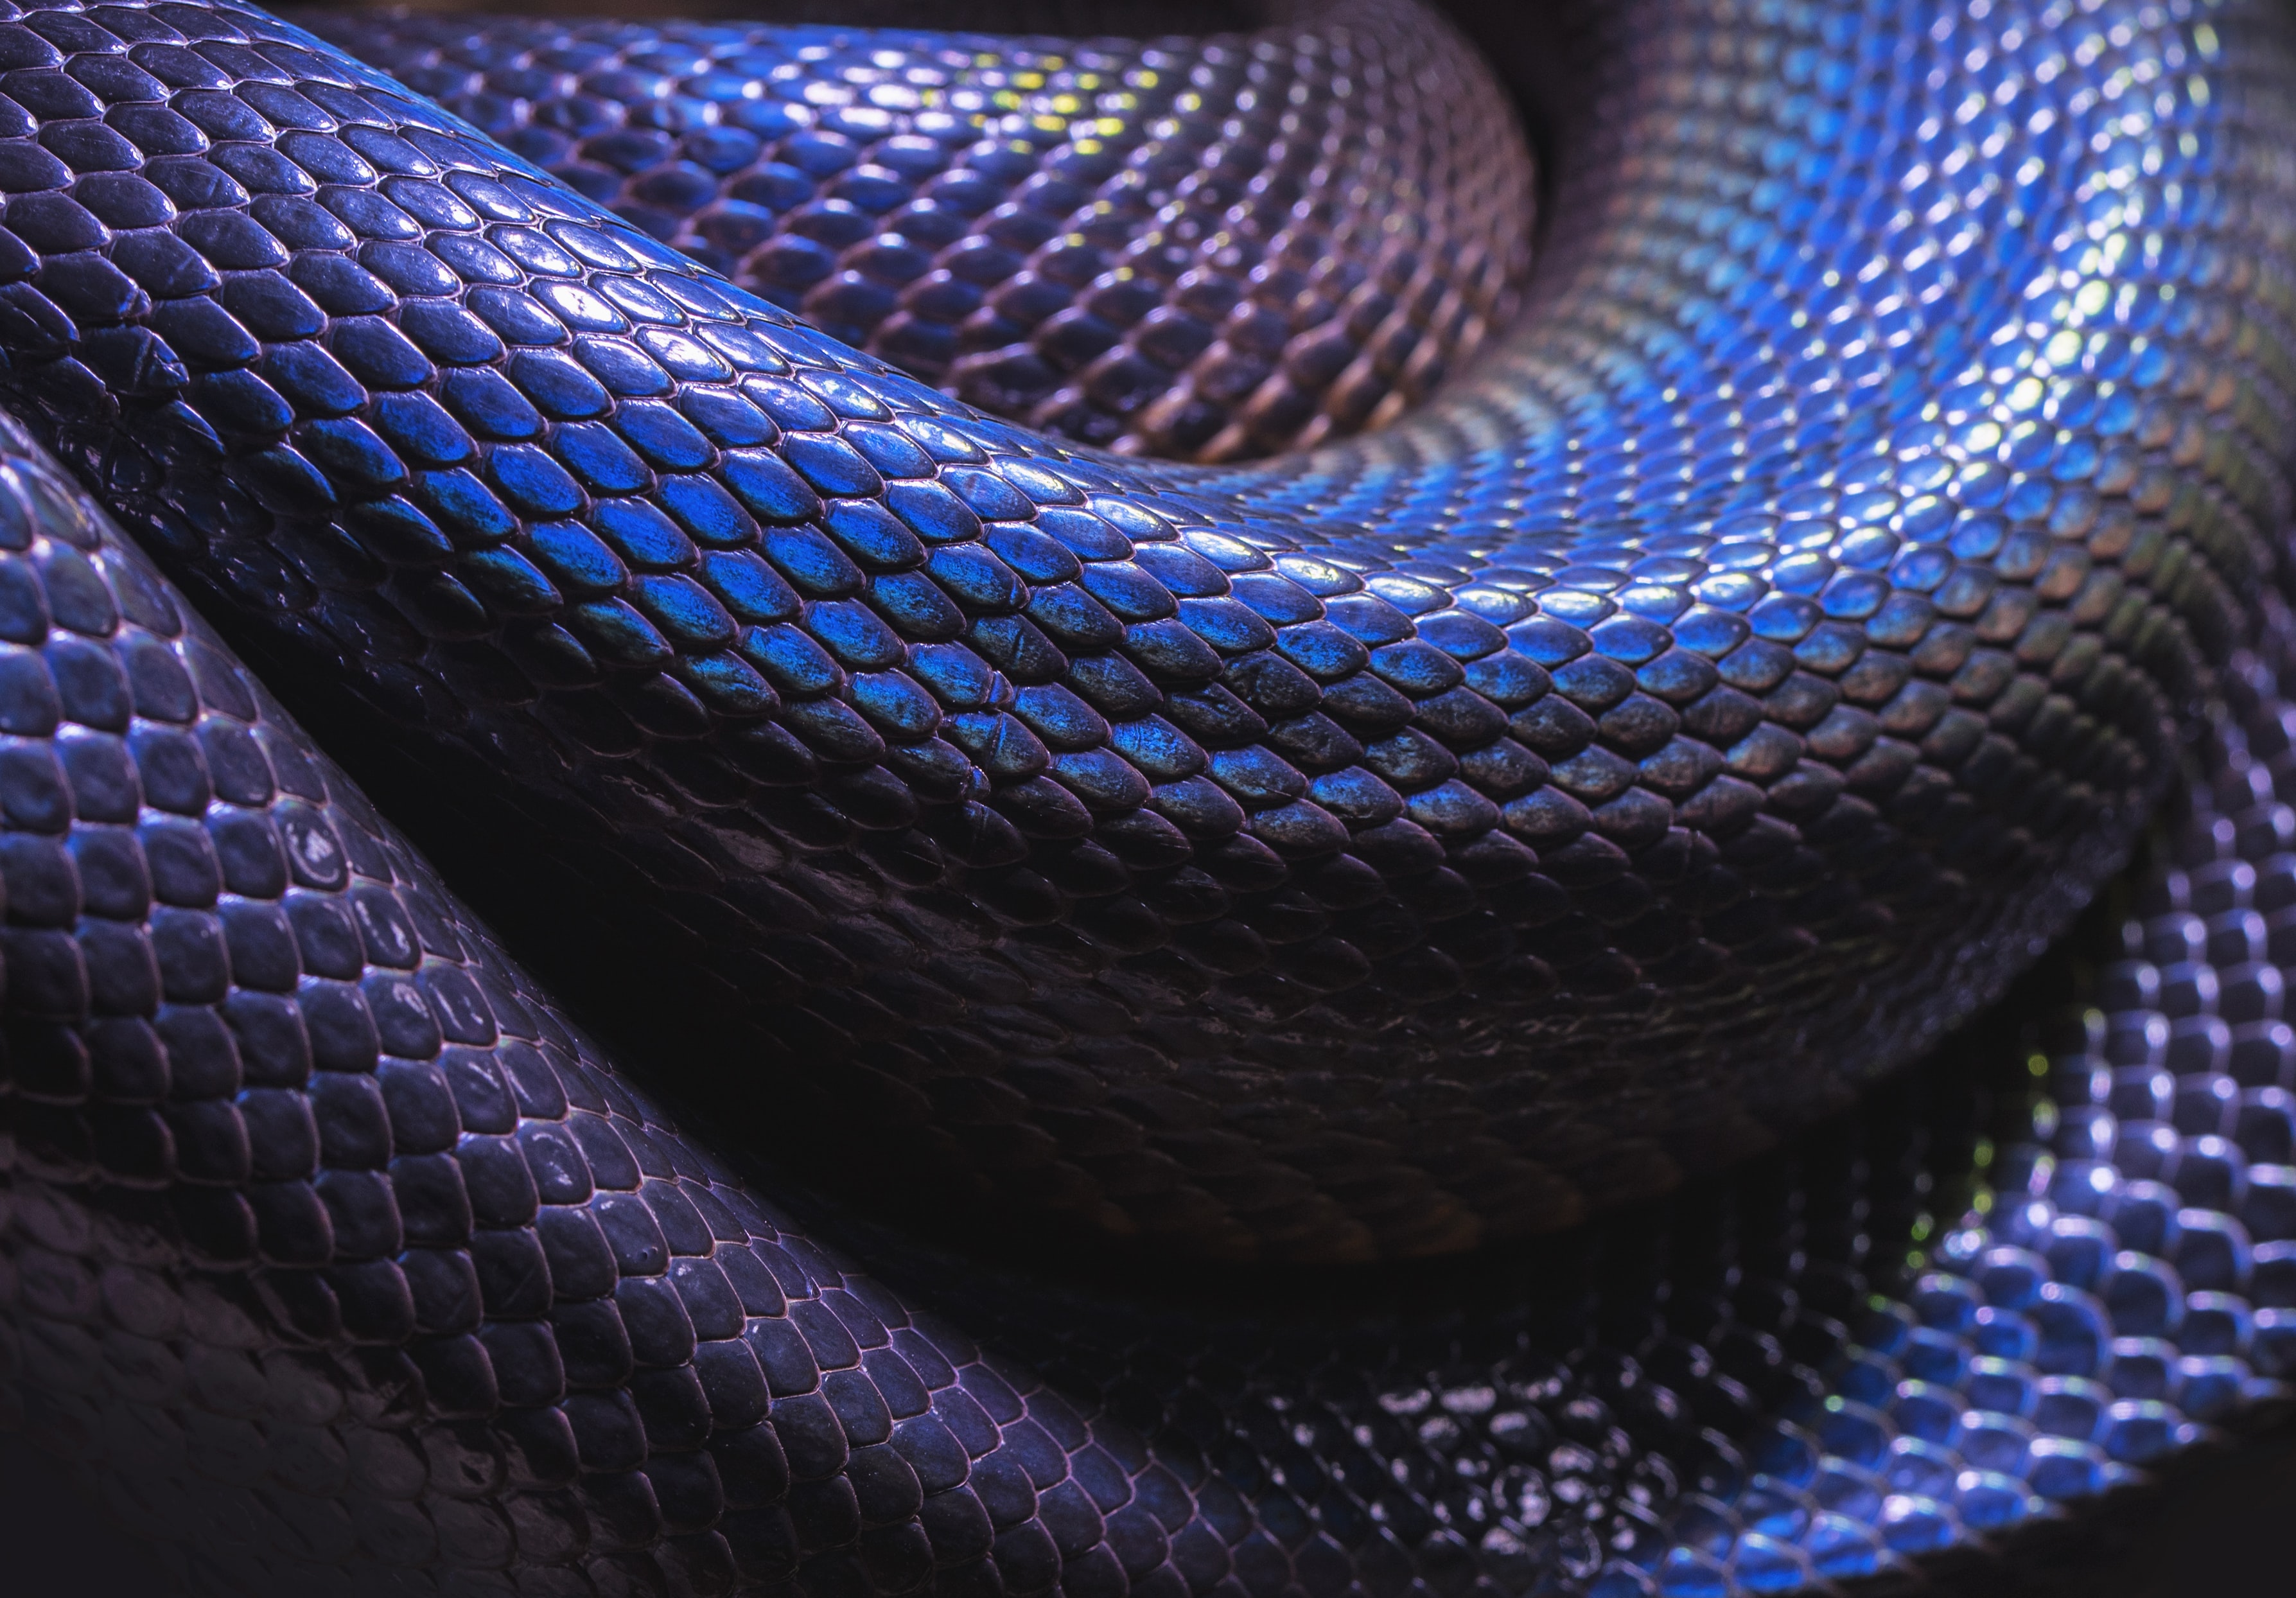 ヘビの壁紙,青い,紫の,コバルトブルー,エレクトリックブルー,バイオレット